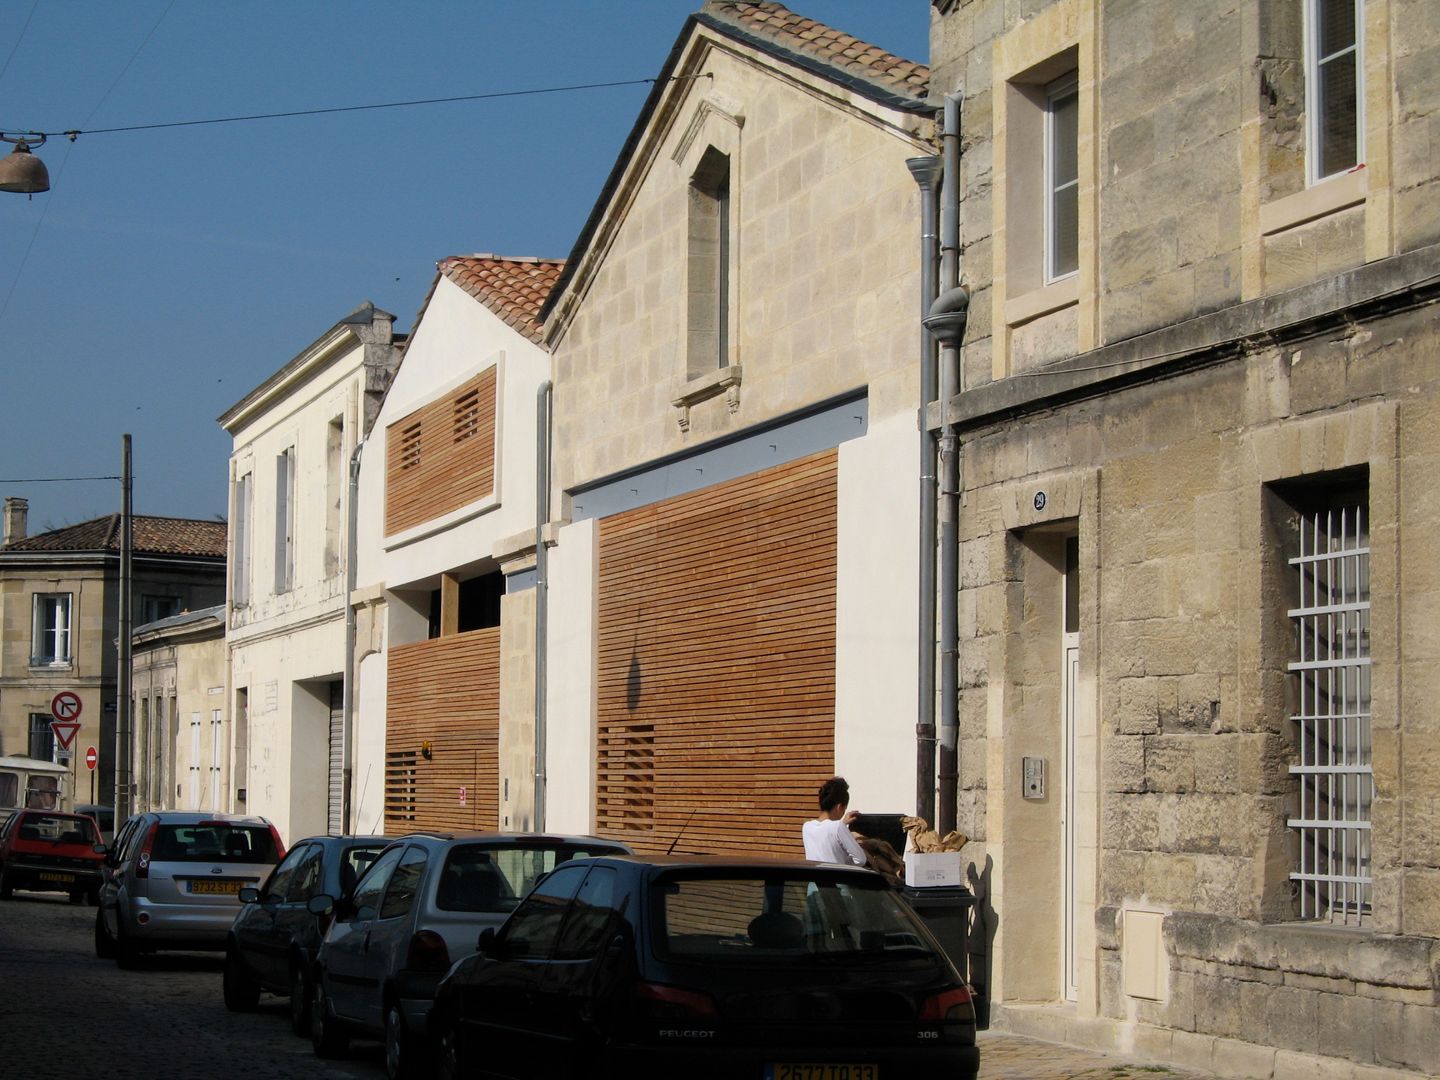 Bordeaux > 4 logements de ville, atelier d'architecture King Kong atelier d'architecture King Kong Nowoczesne domy